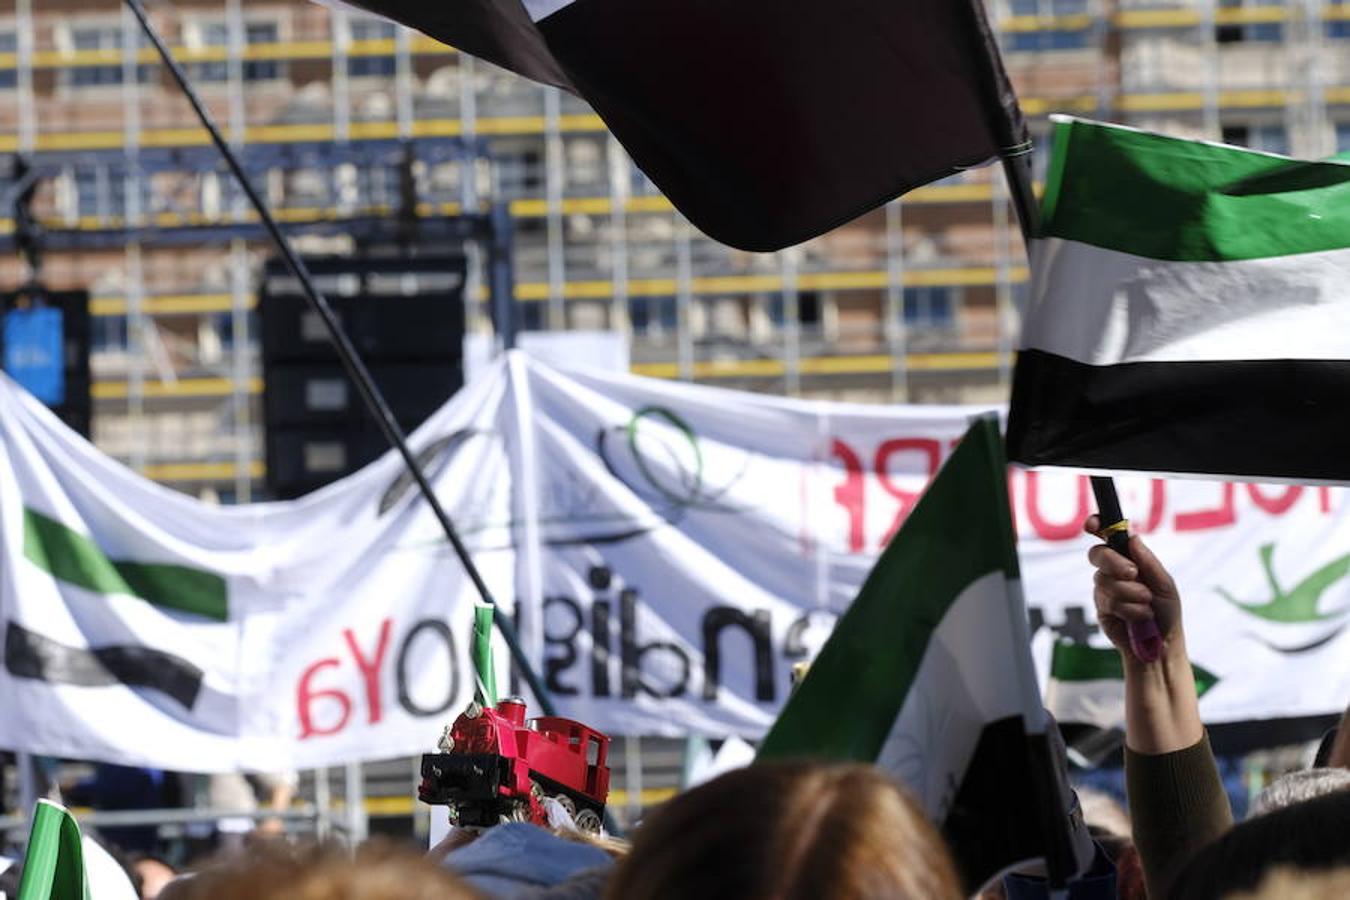 Miles de extremeños exhibiendo pancartas reivindicativas y banderas extremeñas llenan la plaza de España en la concentración por el #trendignoya